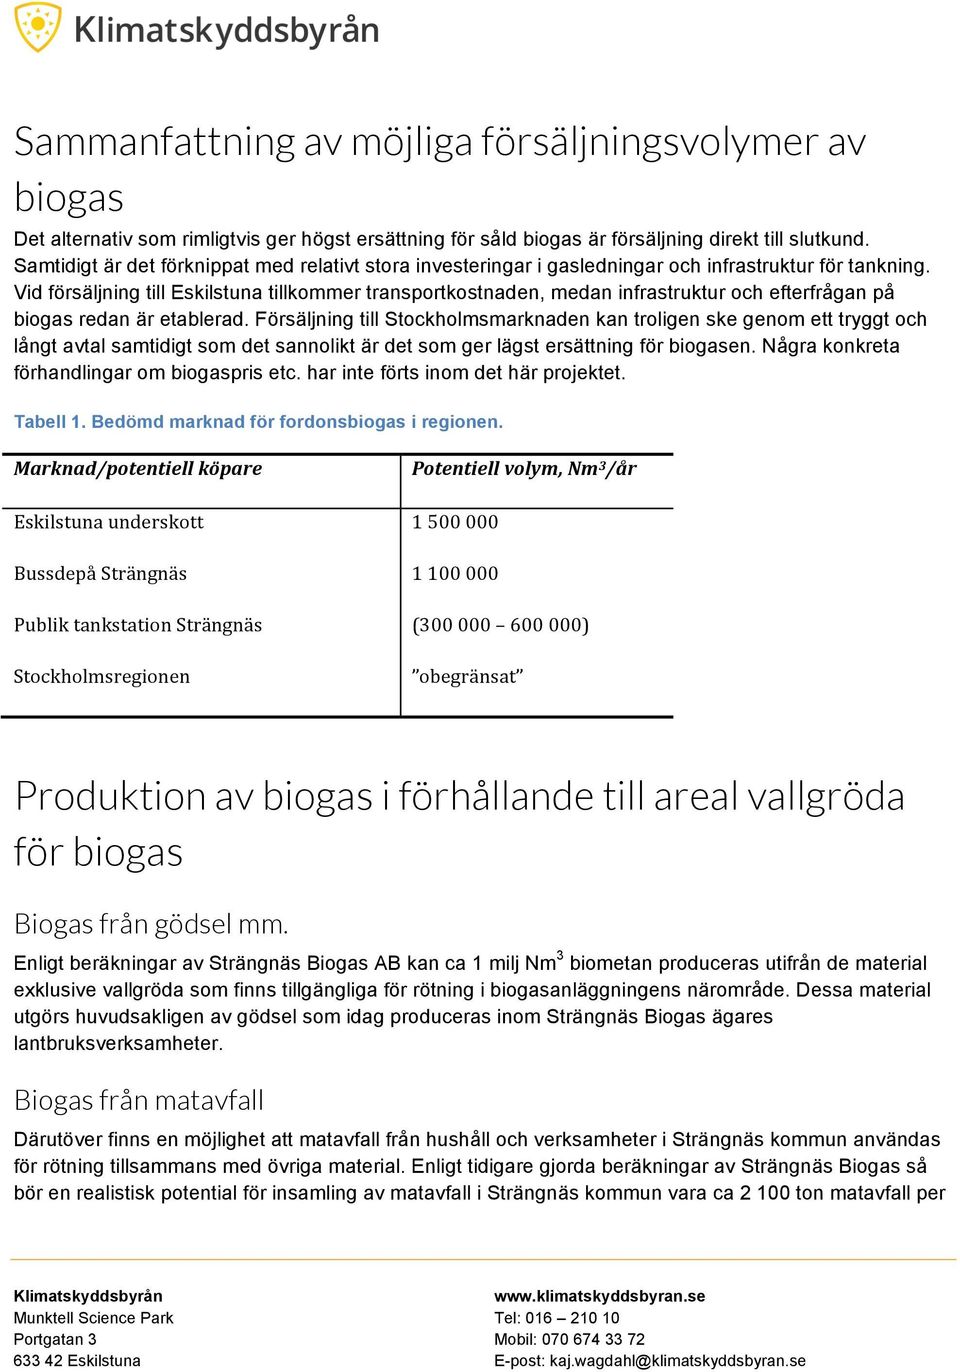 Vid försäljning till Eskilstuna tillkommer transportkostnaden, medan infrastruktur och efterfrågan på biogas redan är etablerad.